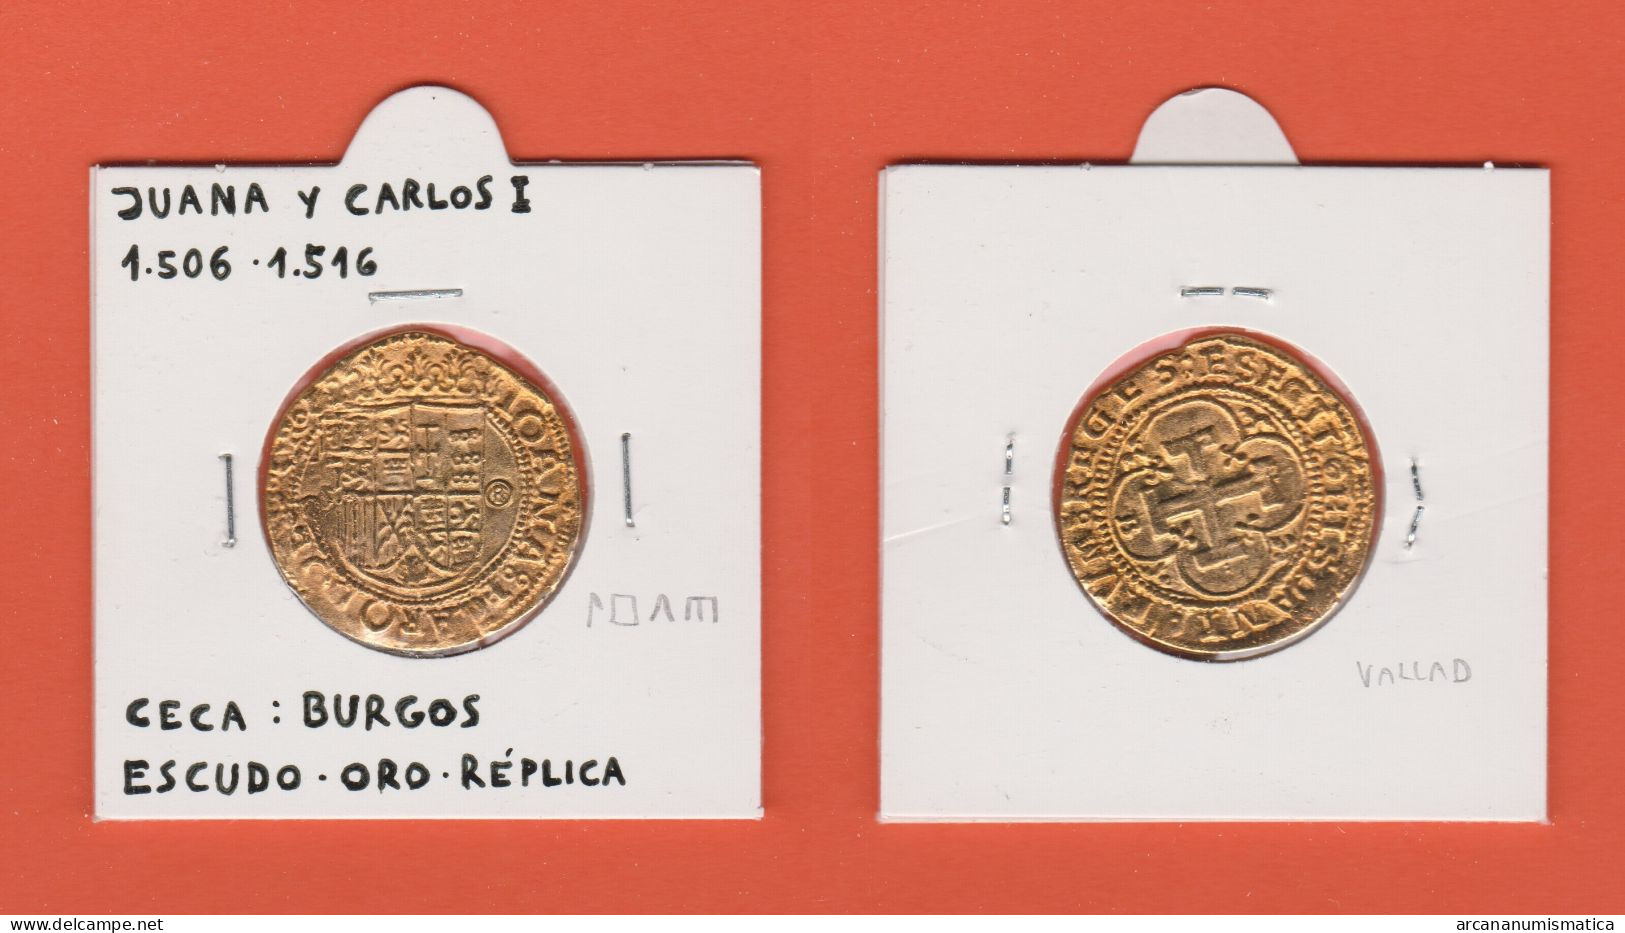 CARLOS I Y JUANA LA LOCA 1.535-1.555 ESCUDO - ORO  Ceca : Burgos  Réplica   DL-13.403 - Monedas Falsas